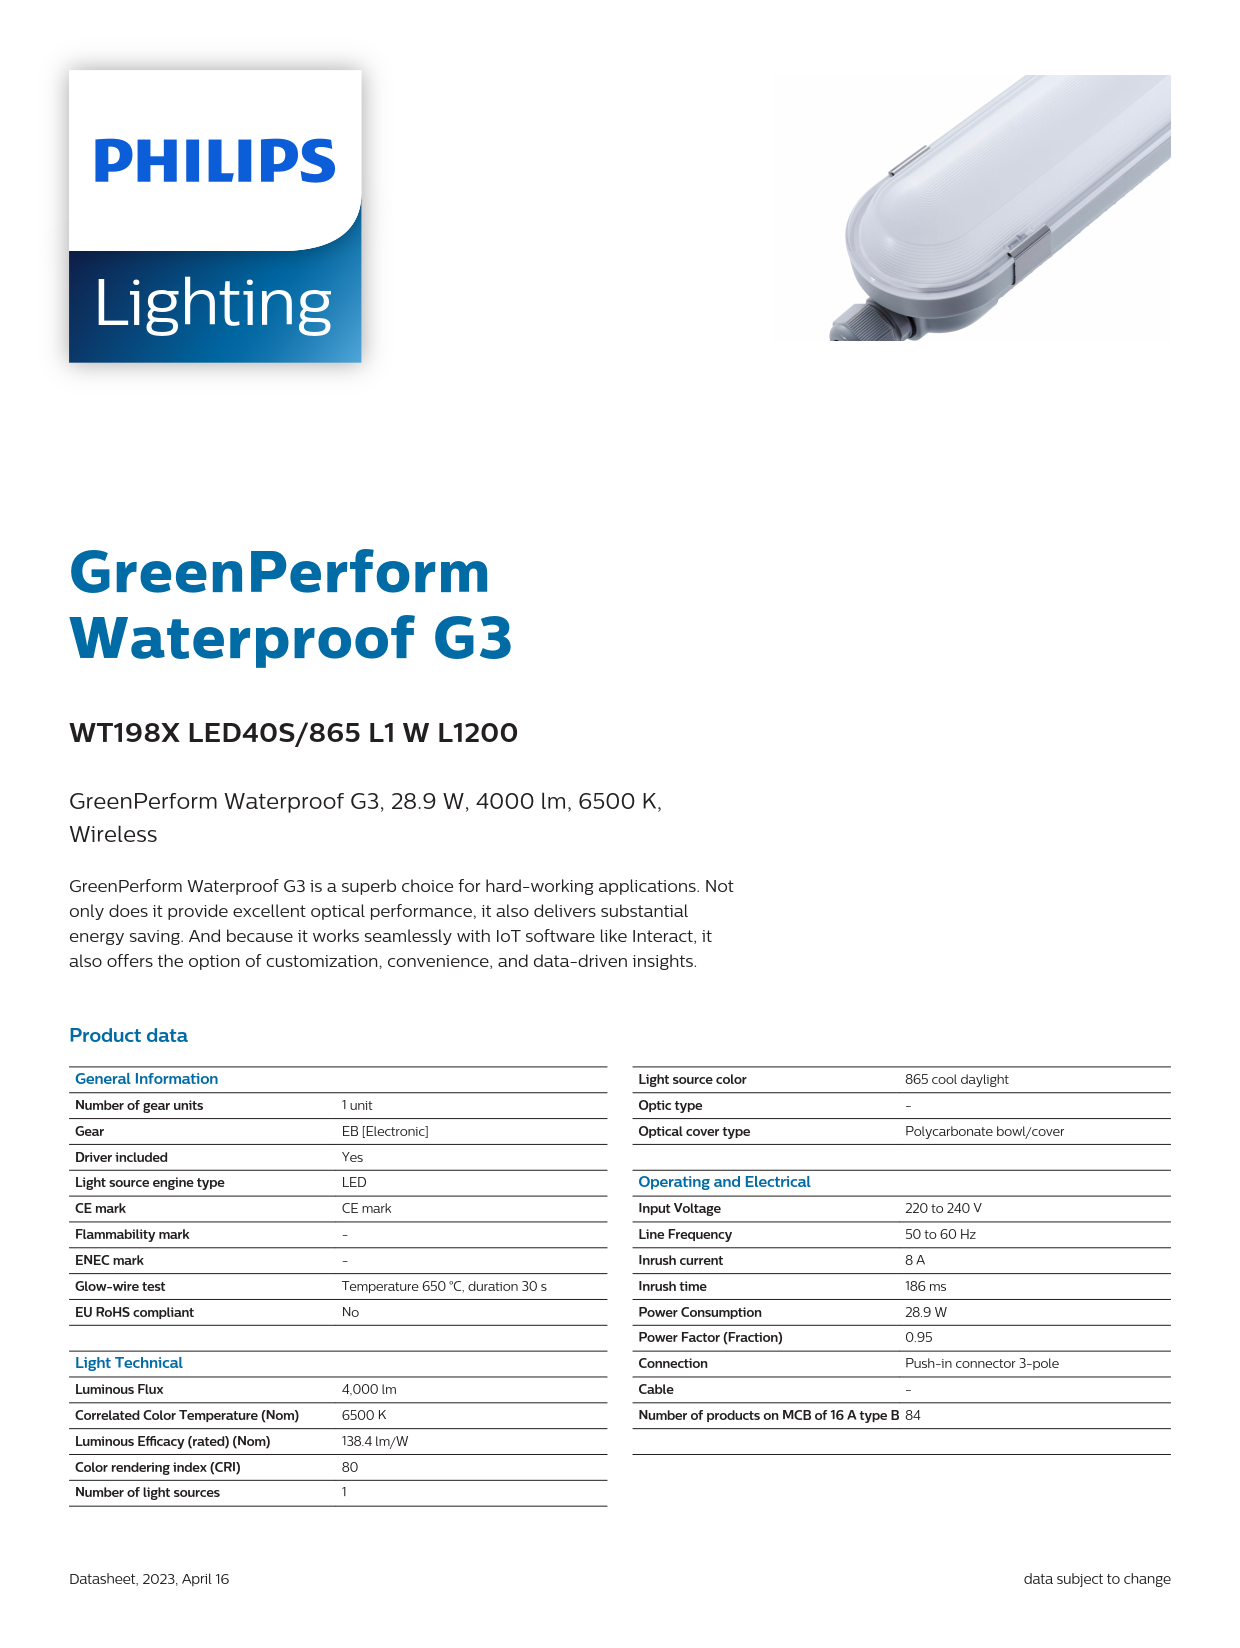 PHILIPS Waterproof Fixture light WT198X LED40S/865 L1 W L1200 911401552202